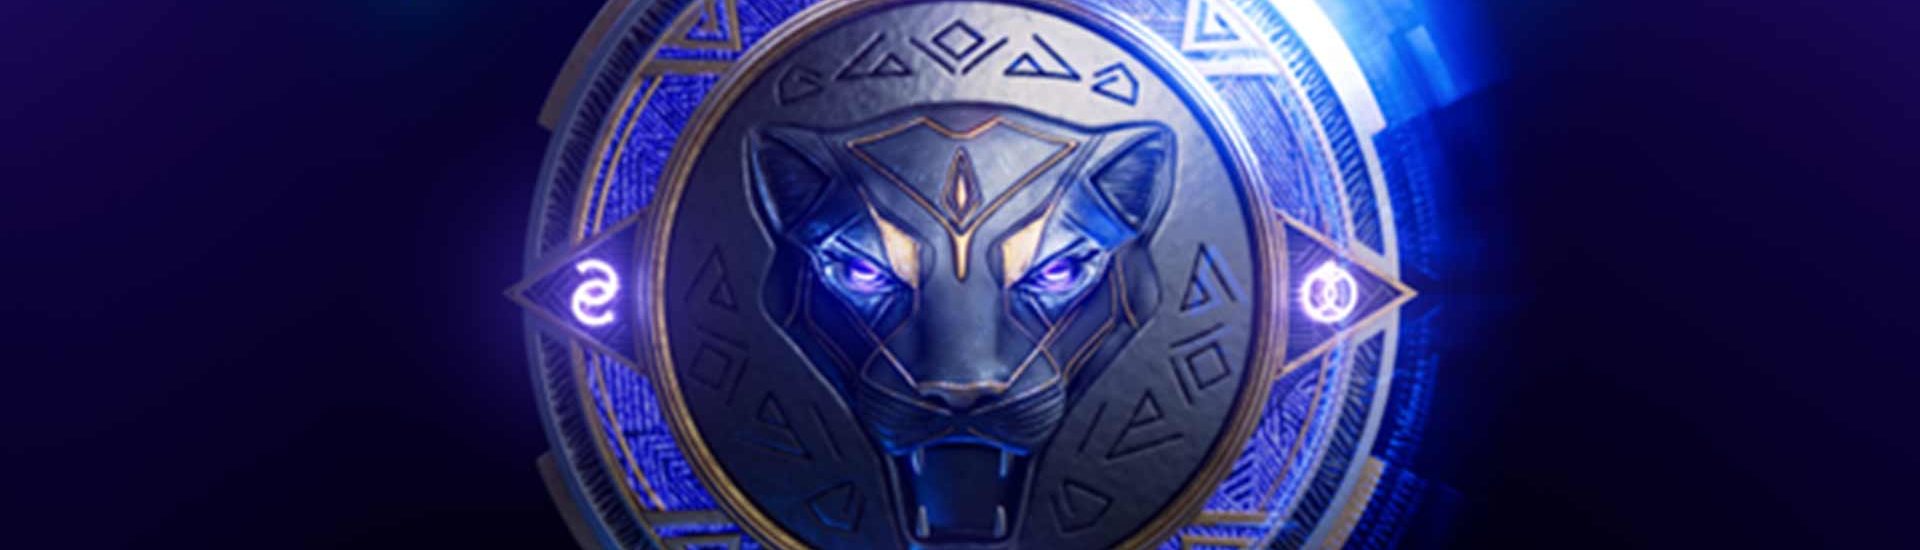 Neues EA-Studio entwickelt ein Black Panther Spiel